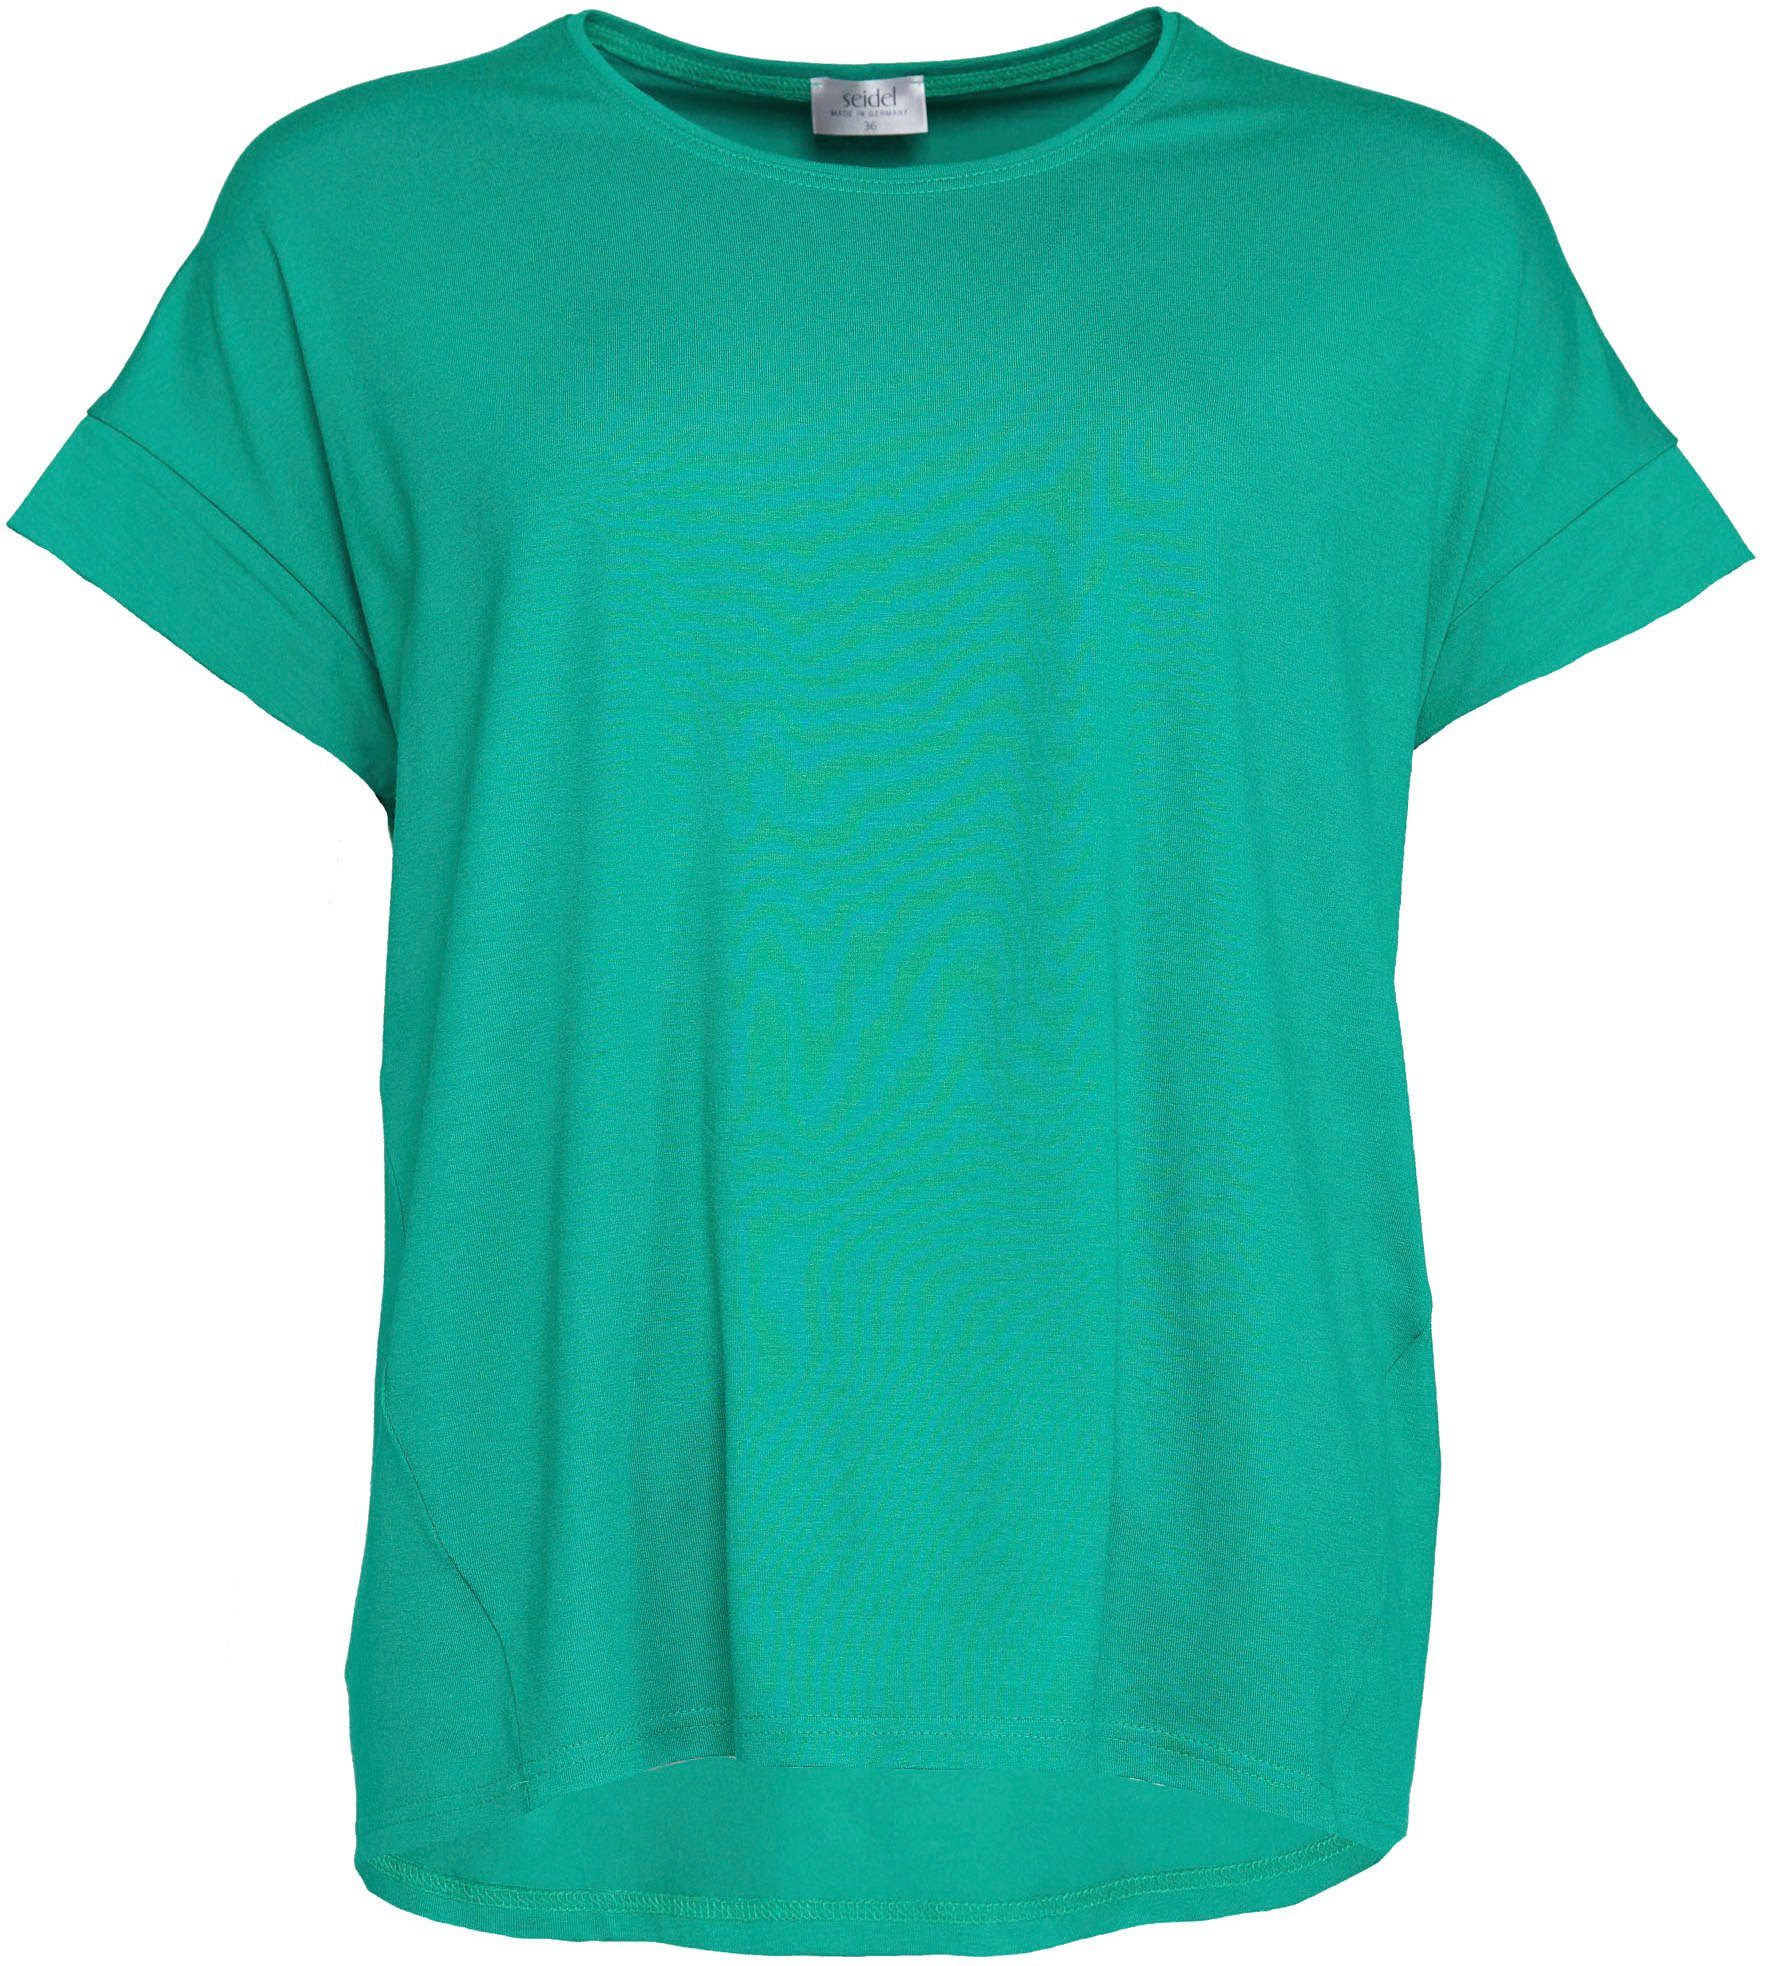 Seidel Moden Kurzarmshirt mit überschnittenen Schultern grün